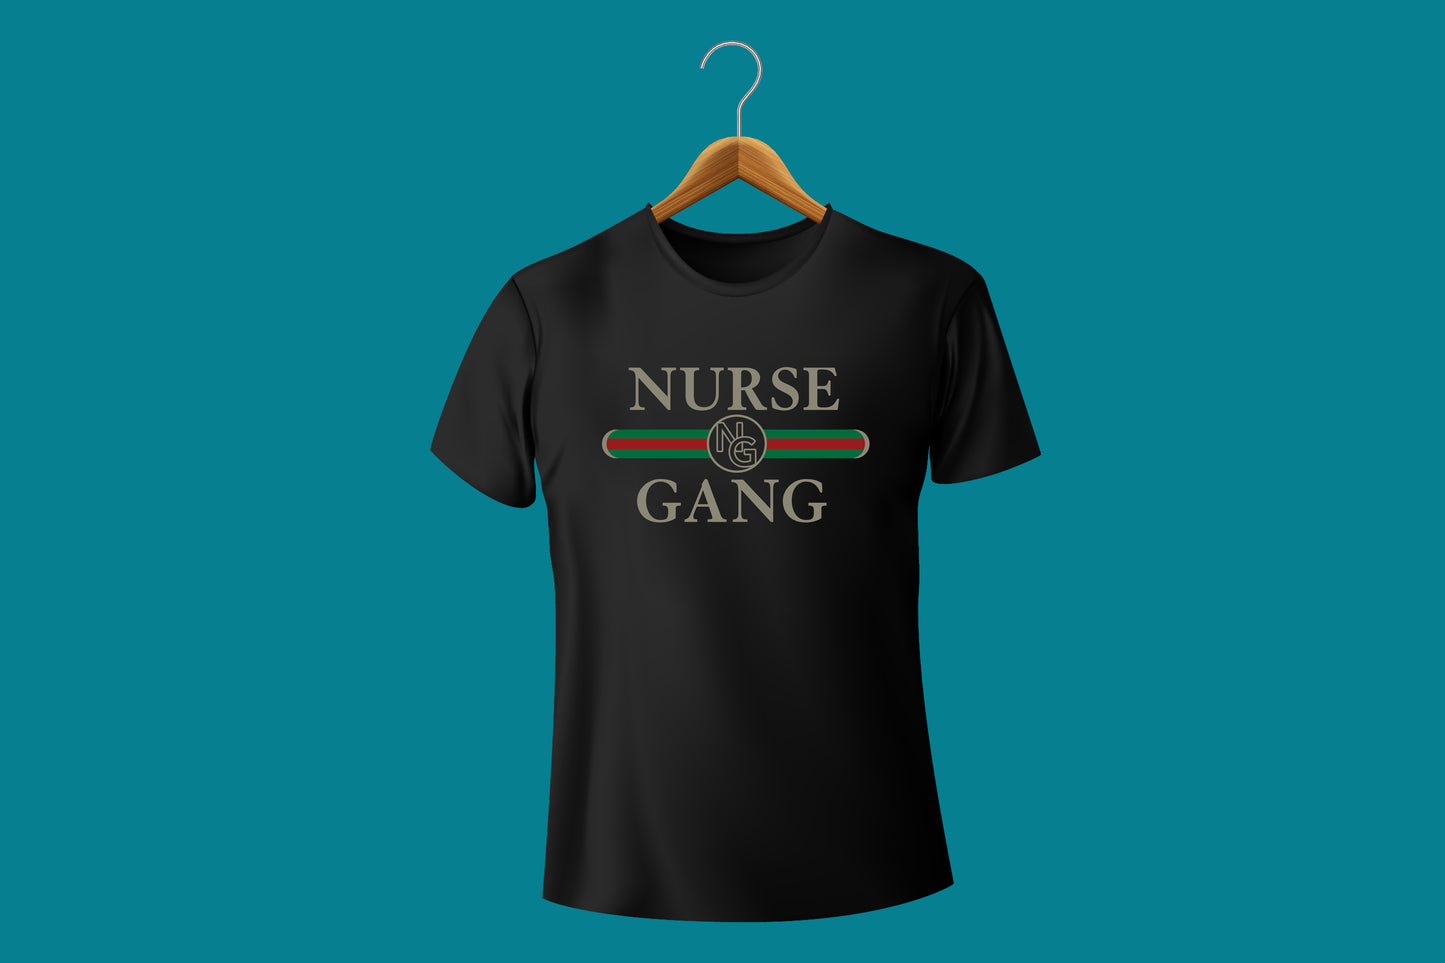 Nurse Gang "NG" Tee shirt